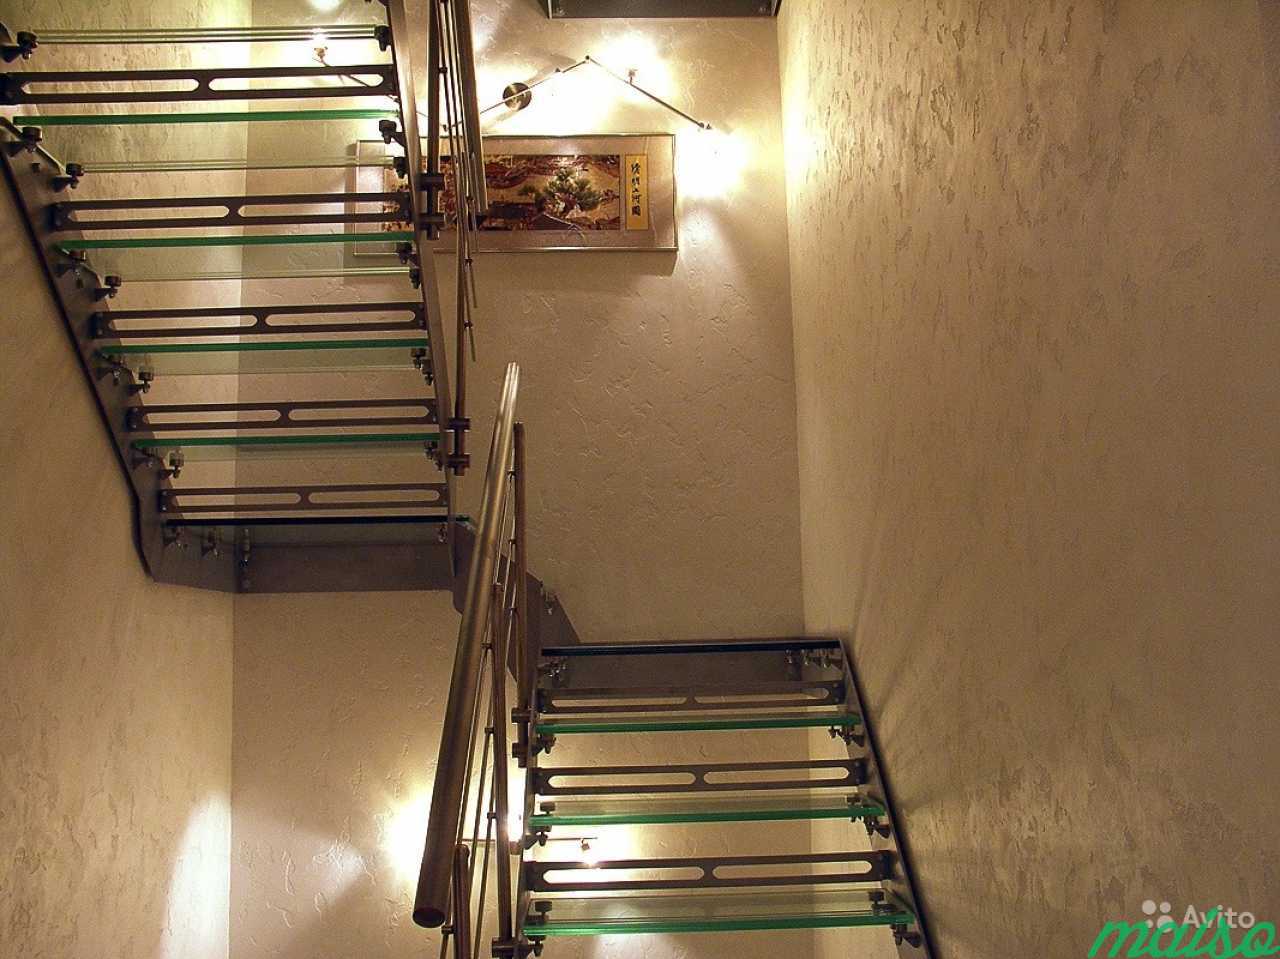 Декоративная штукатурка в интерьере лестницы